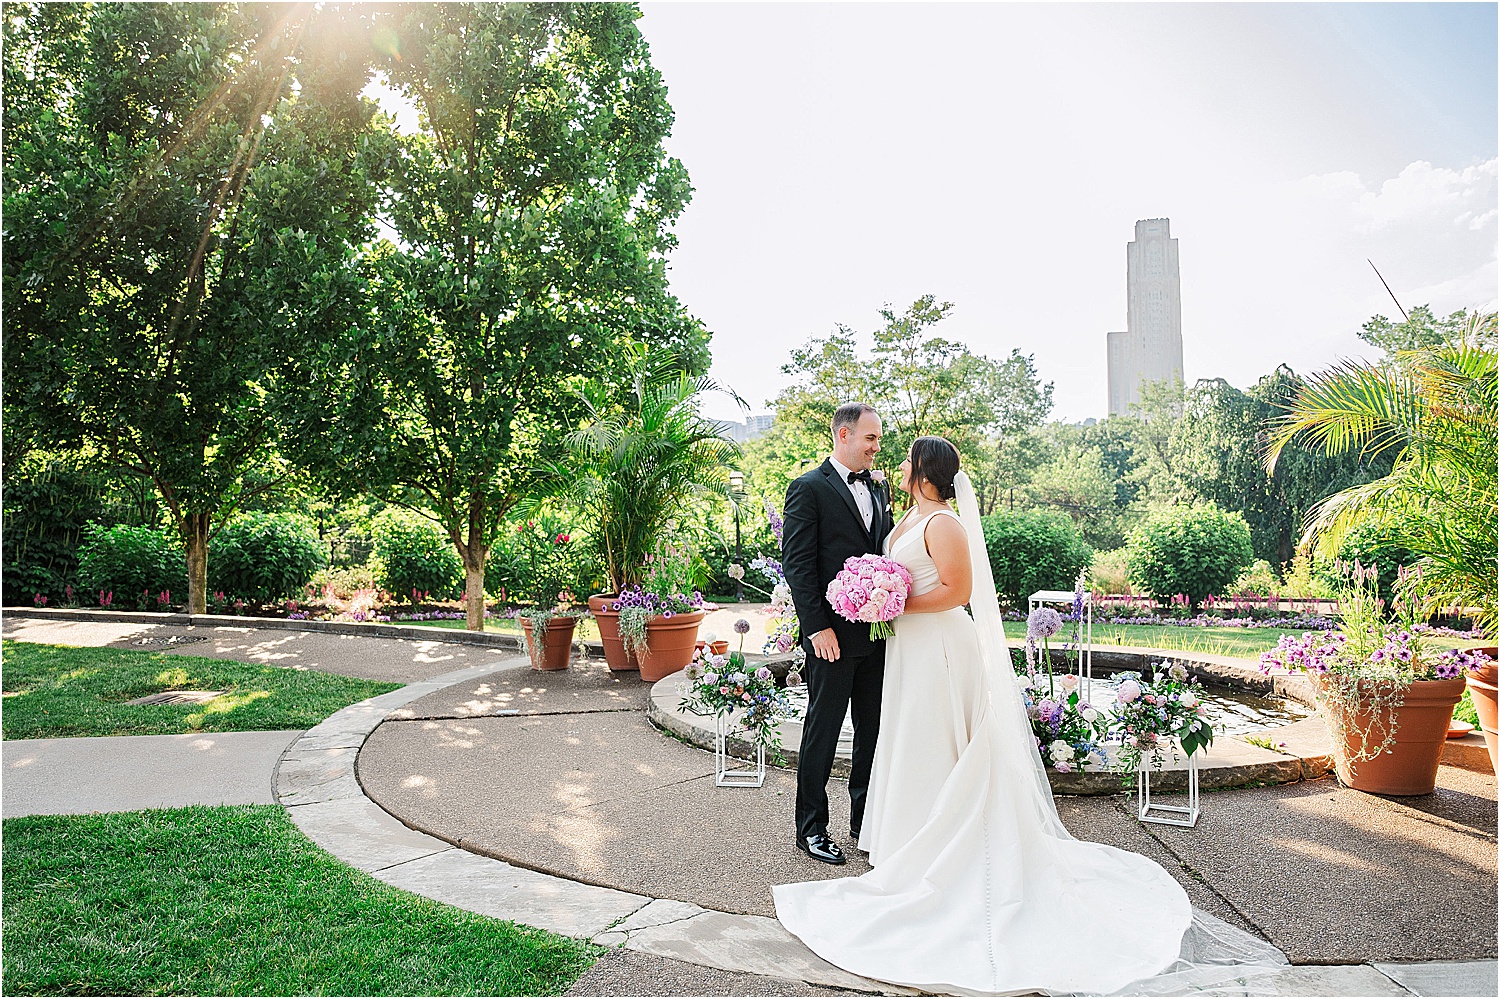 Bride and Groom Phipps Conservatory Outdoor Garden • Wild Weather - Love at a Phipps Conservatory Outdoor Garden Wedding